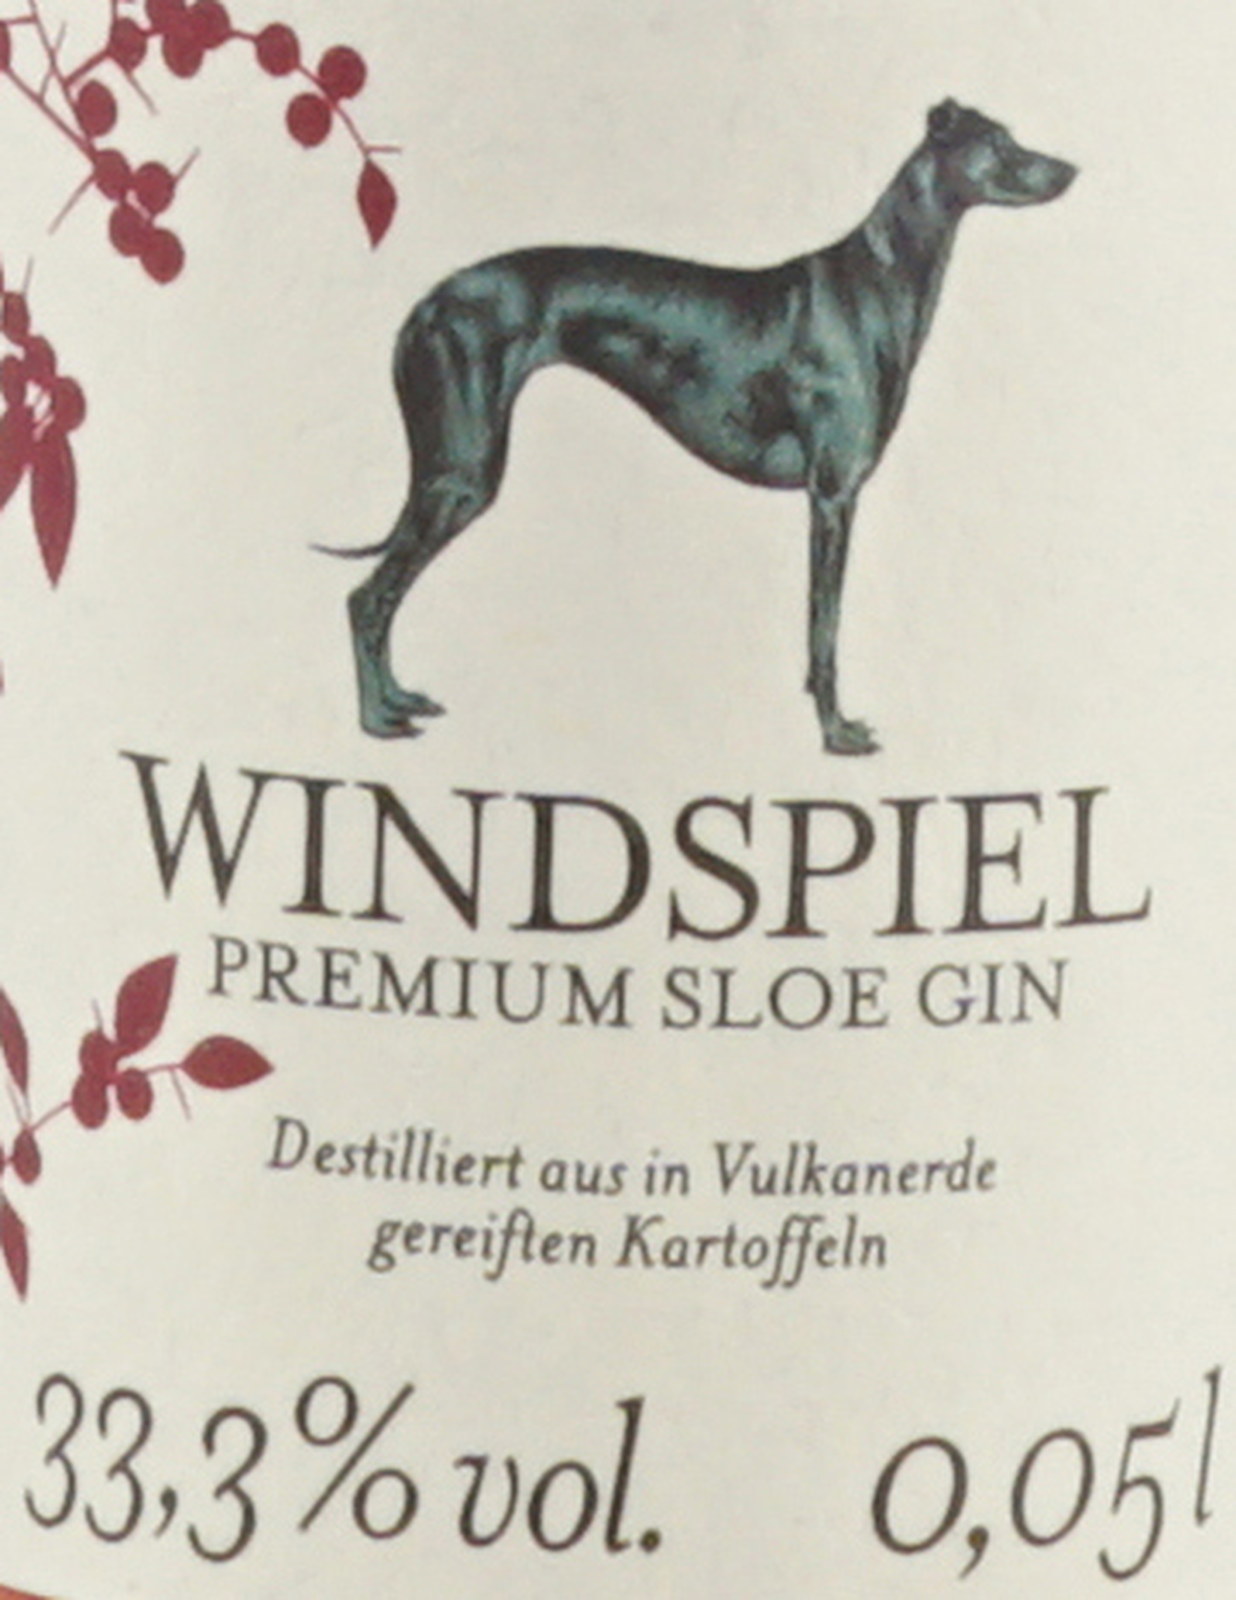 Windspiel Premium Gin % 33,3 Liter 0,05 Sloe